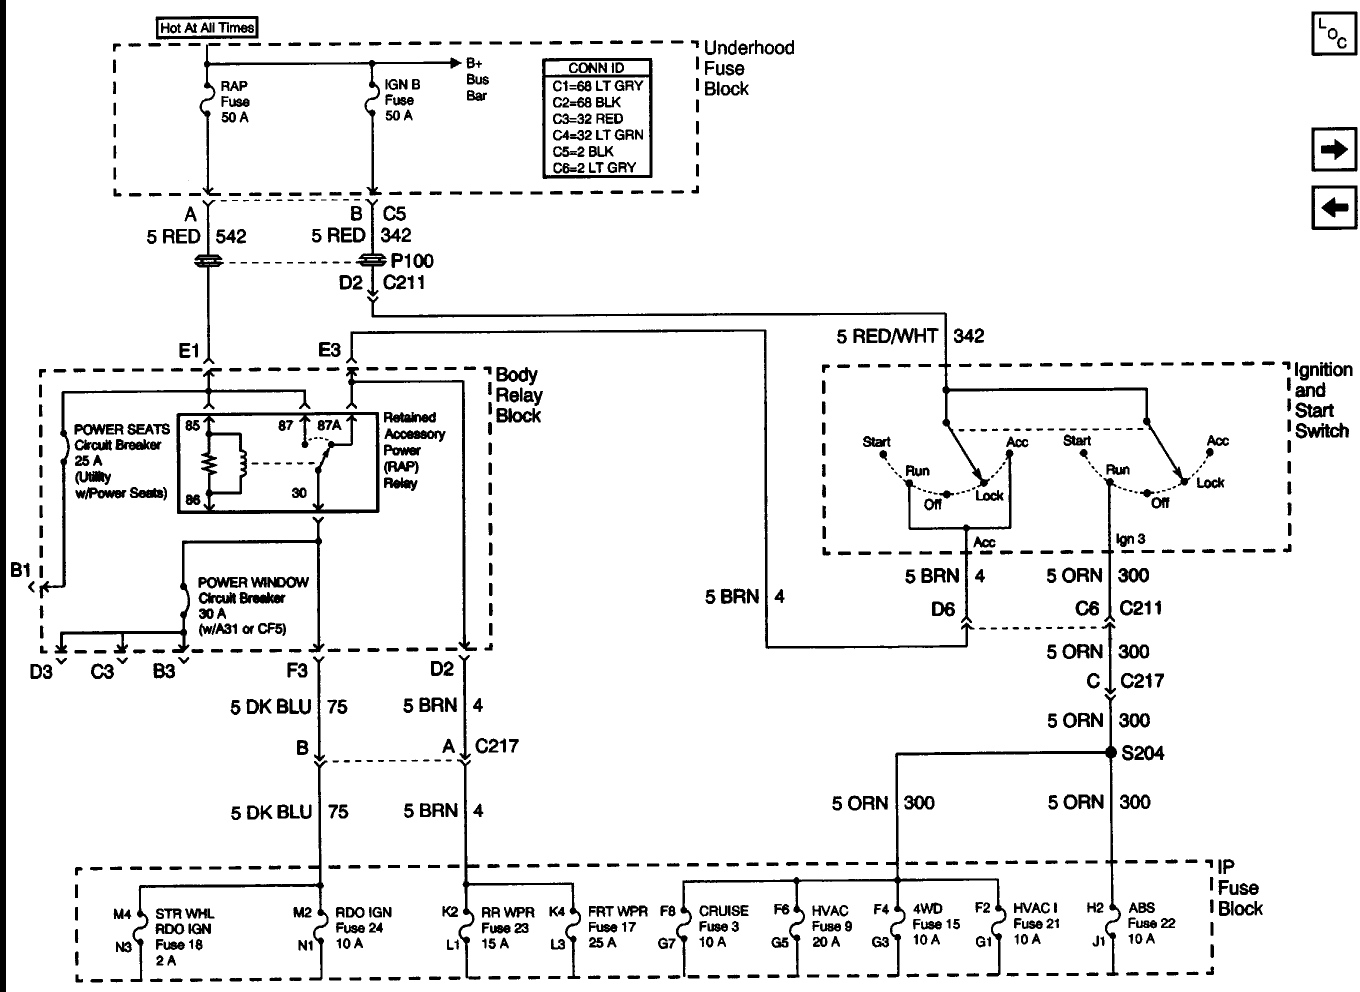 Anatomy of the Ignition Switch - Blazer Forum - Chevy Blazer Forums  2002 Blazer Ignition Module Wiring Diagram    Blazer Forum